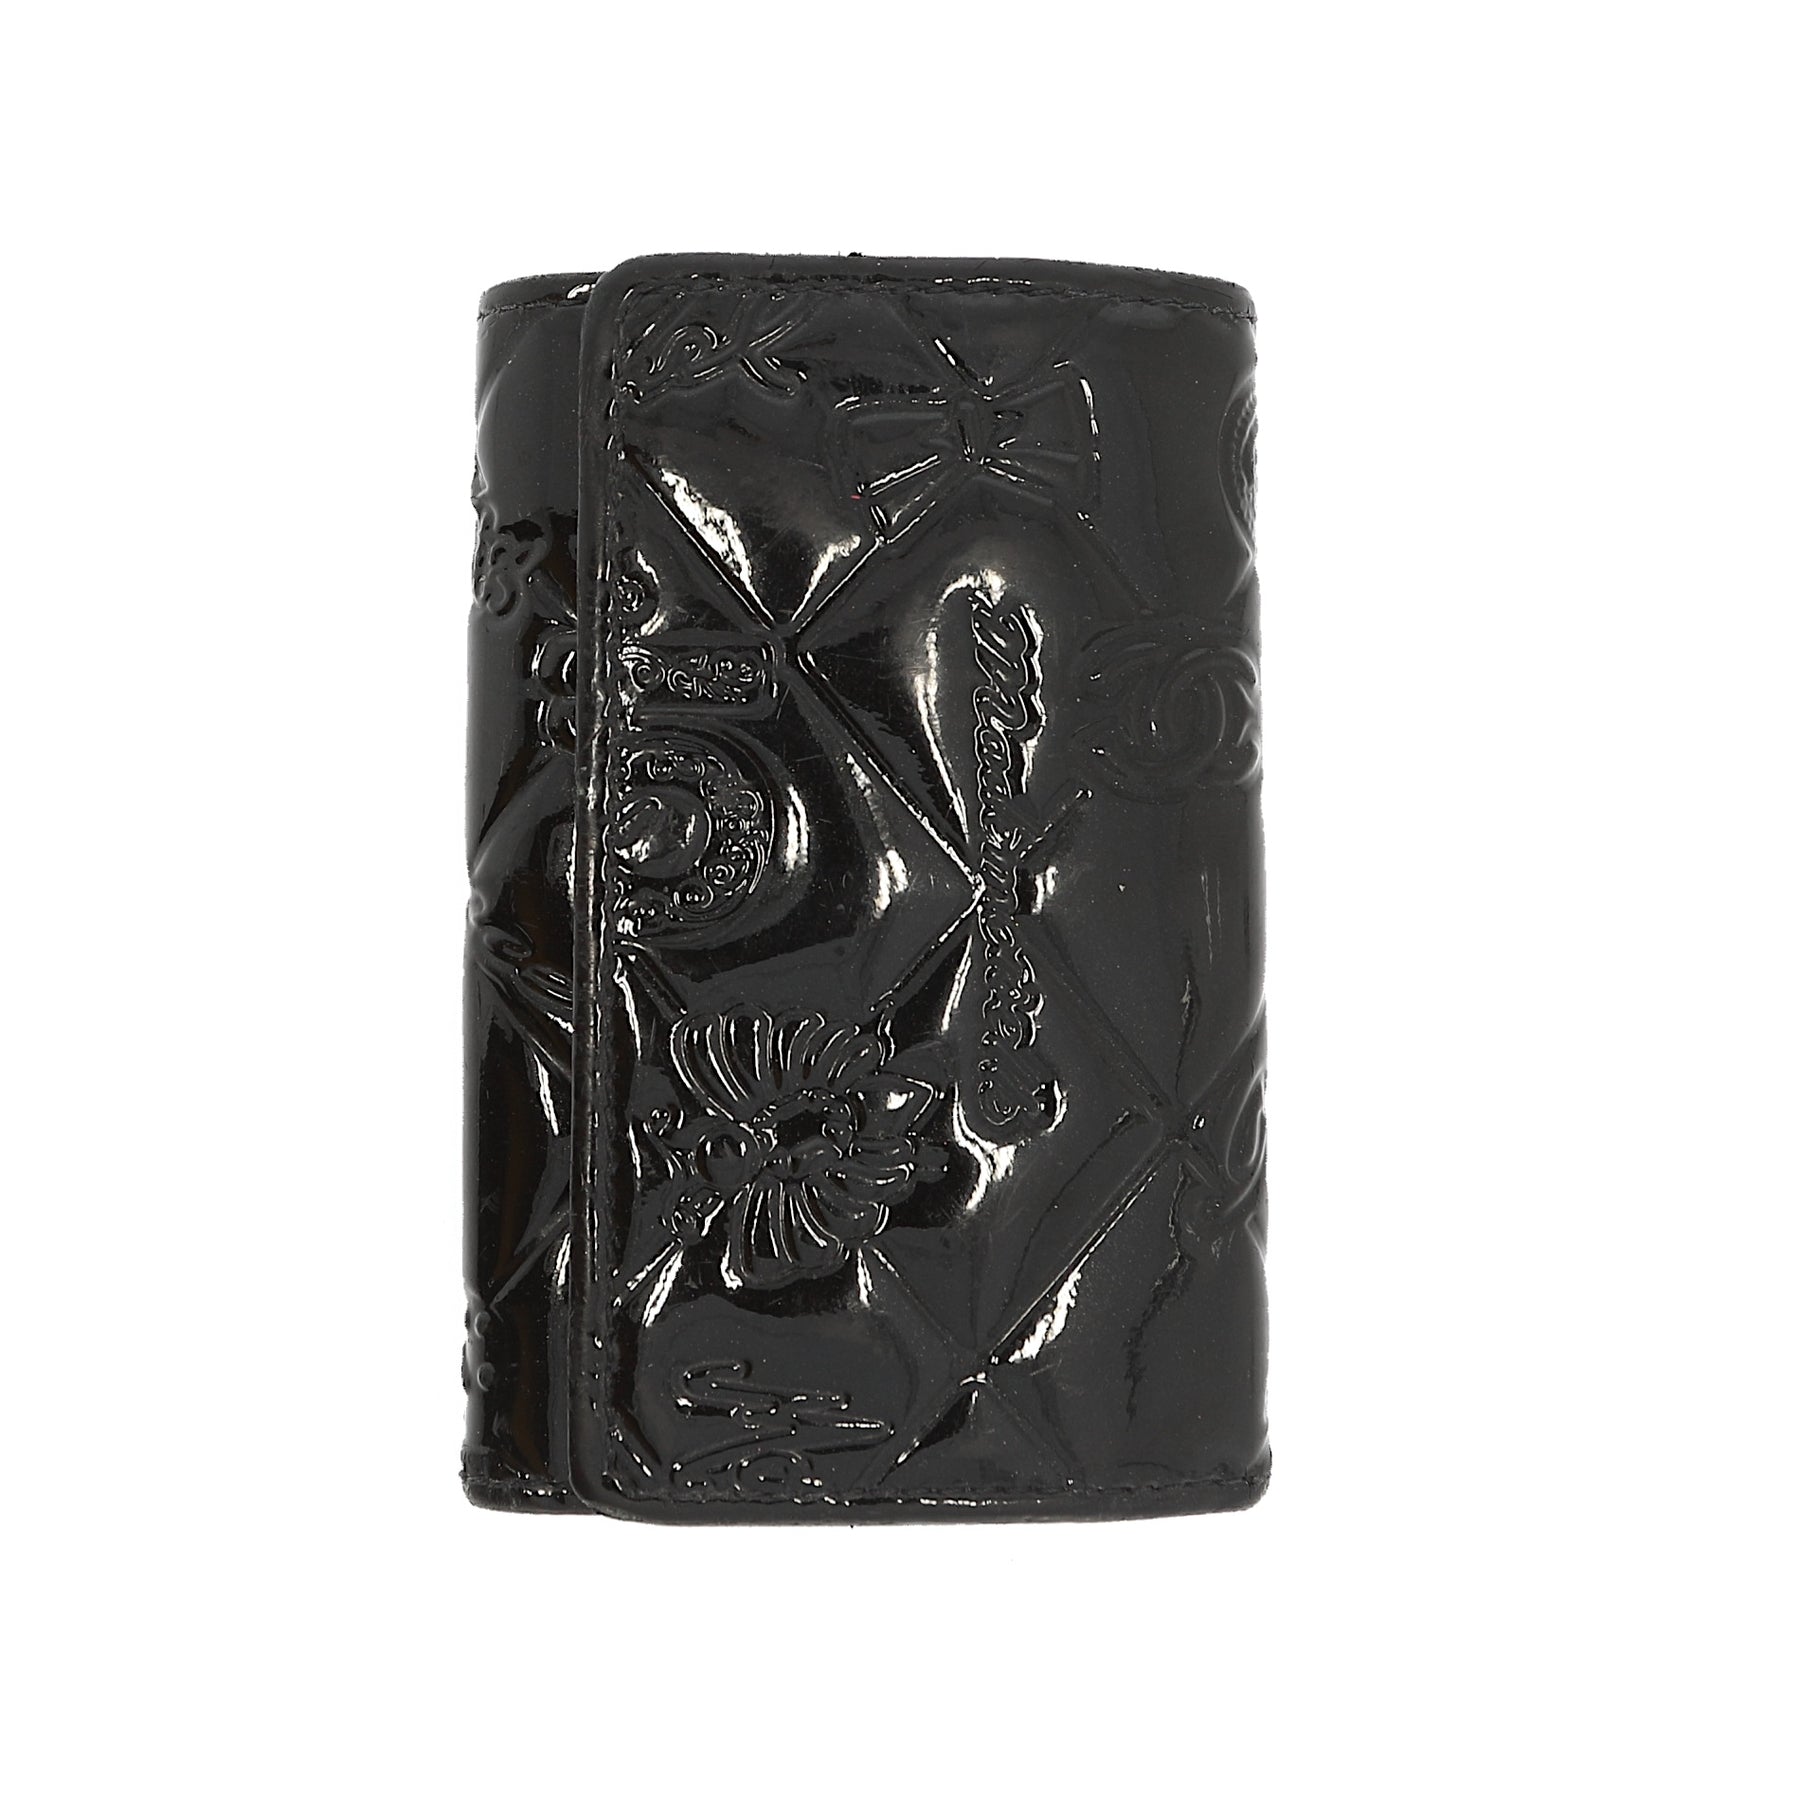 Chanel Key holder in Black Patent – Fancy Lux